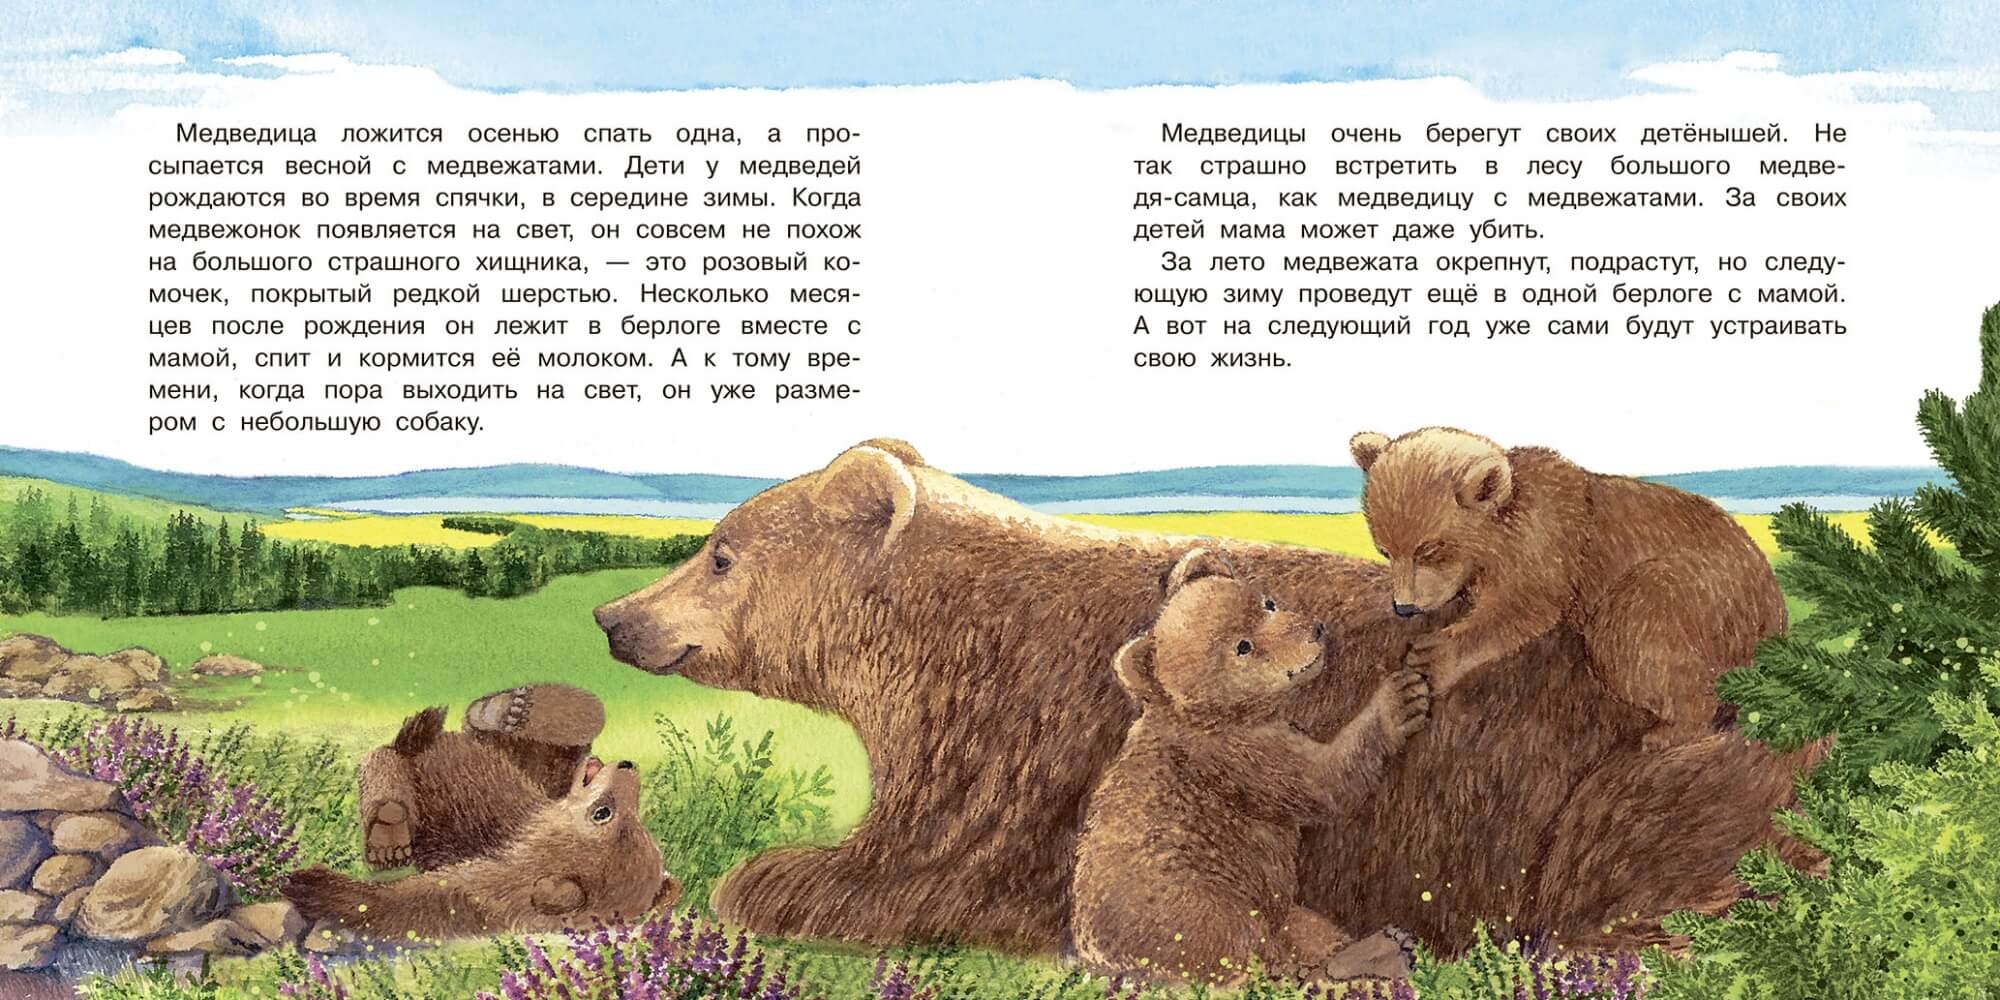 Описание медведя по плану. Рассказ о медведе. Рассказ про медвежонка. Сказка про медвежонка. История про мишку.